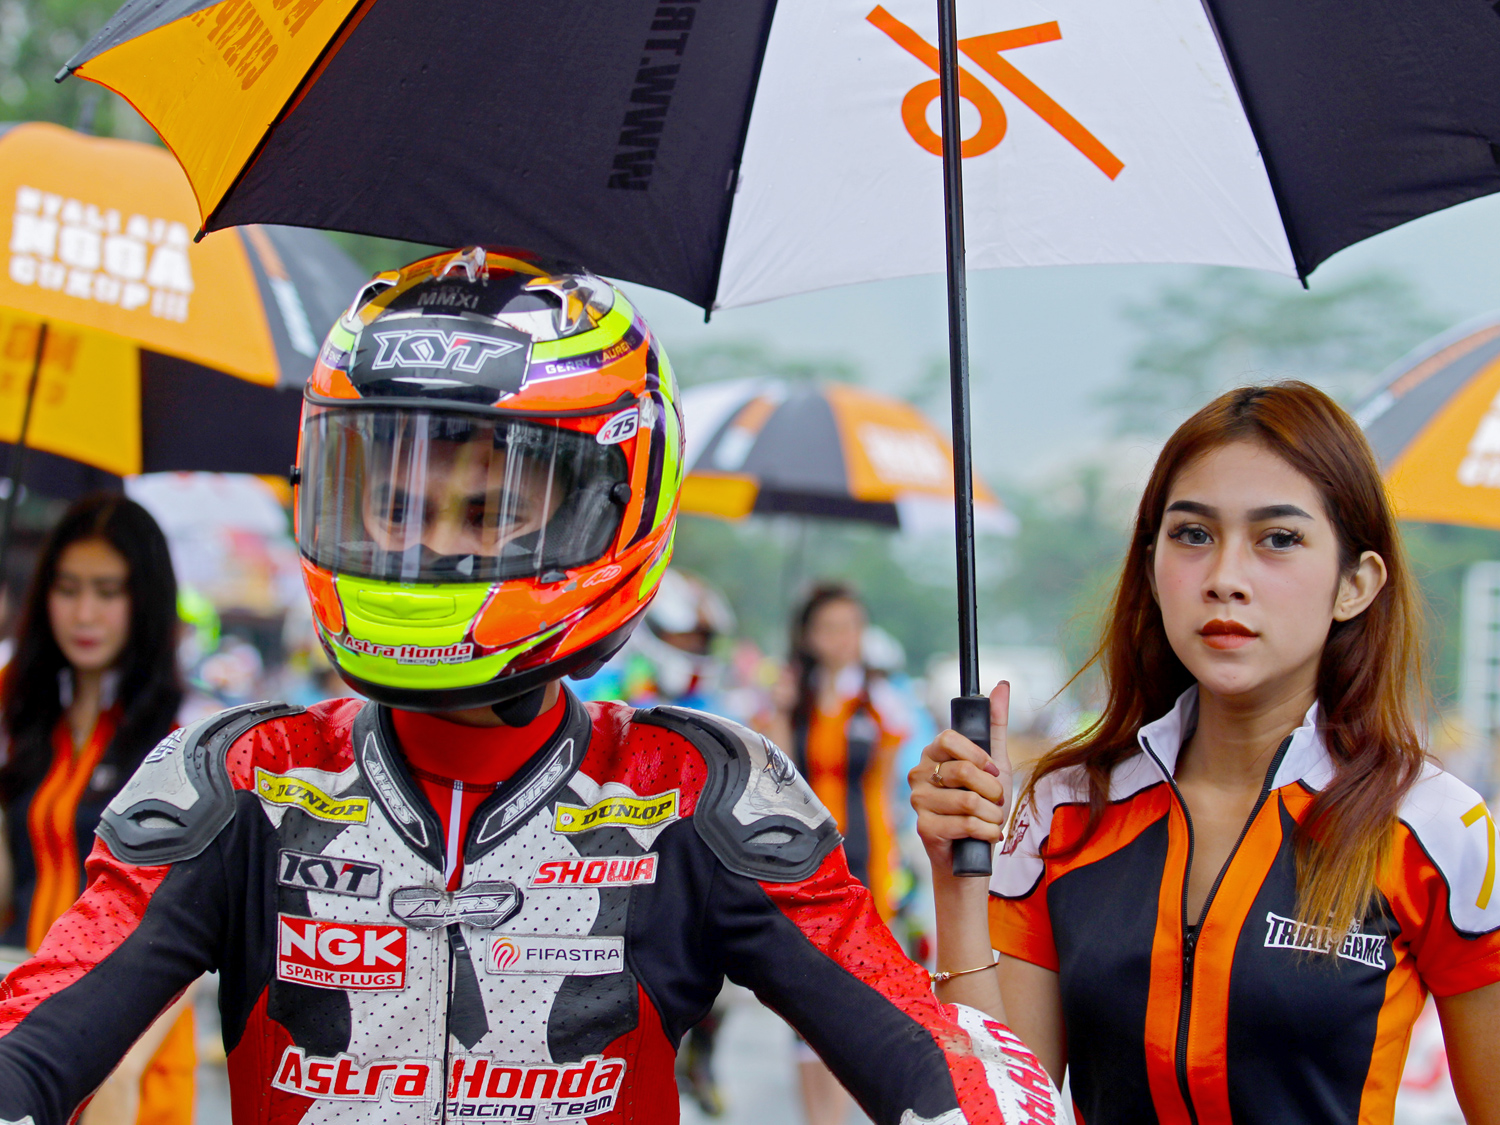 Umbrella girl dari Kota dingin Malang bersiap melepas salah satu pembalap di seri ketiga Trial Game Asphalt